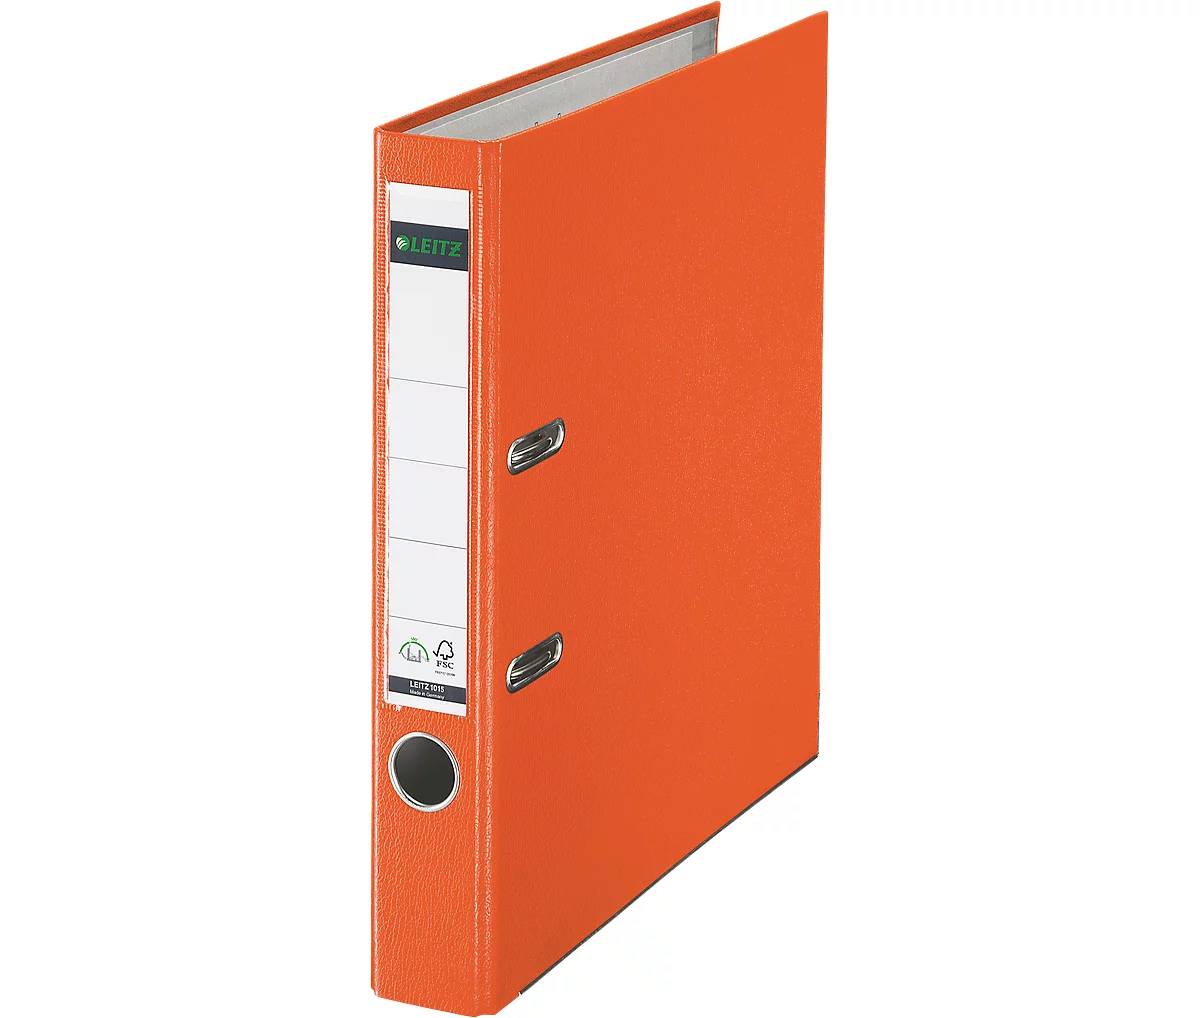 LEITZ® ordner 1015, A4, rugbreedte 52 mm, oranje